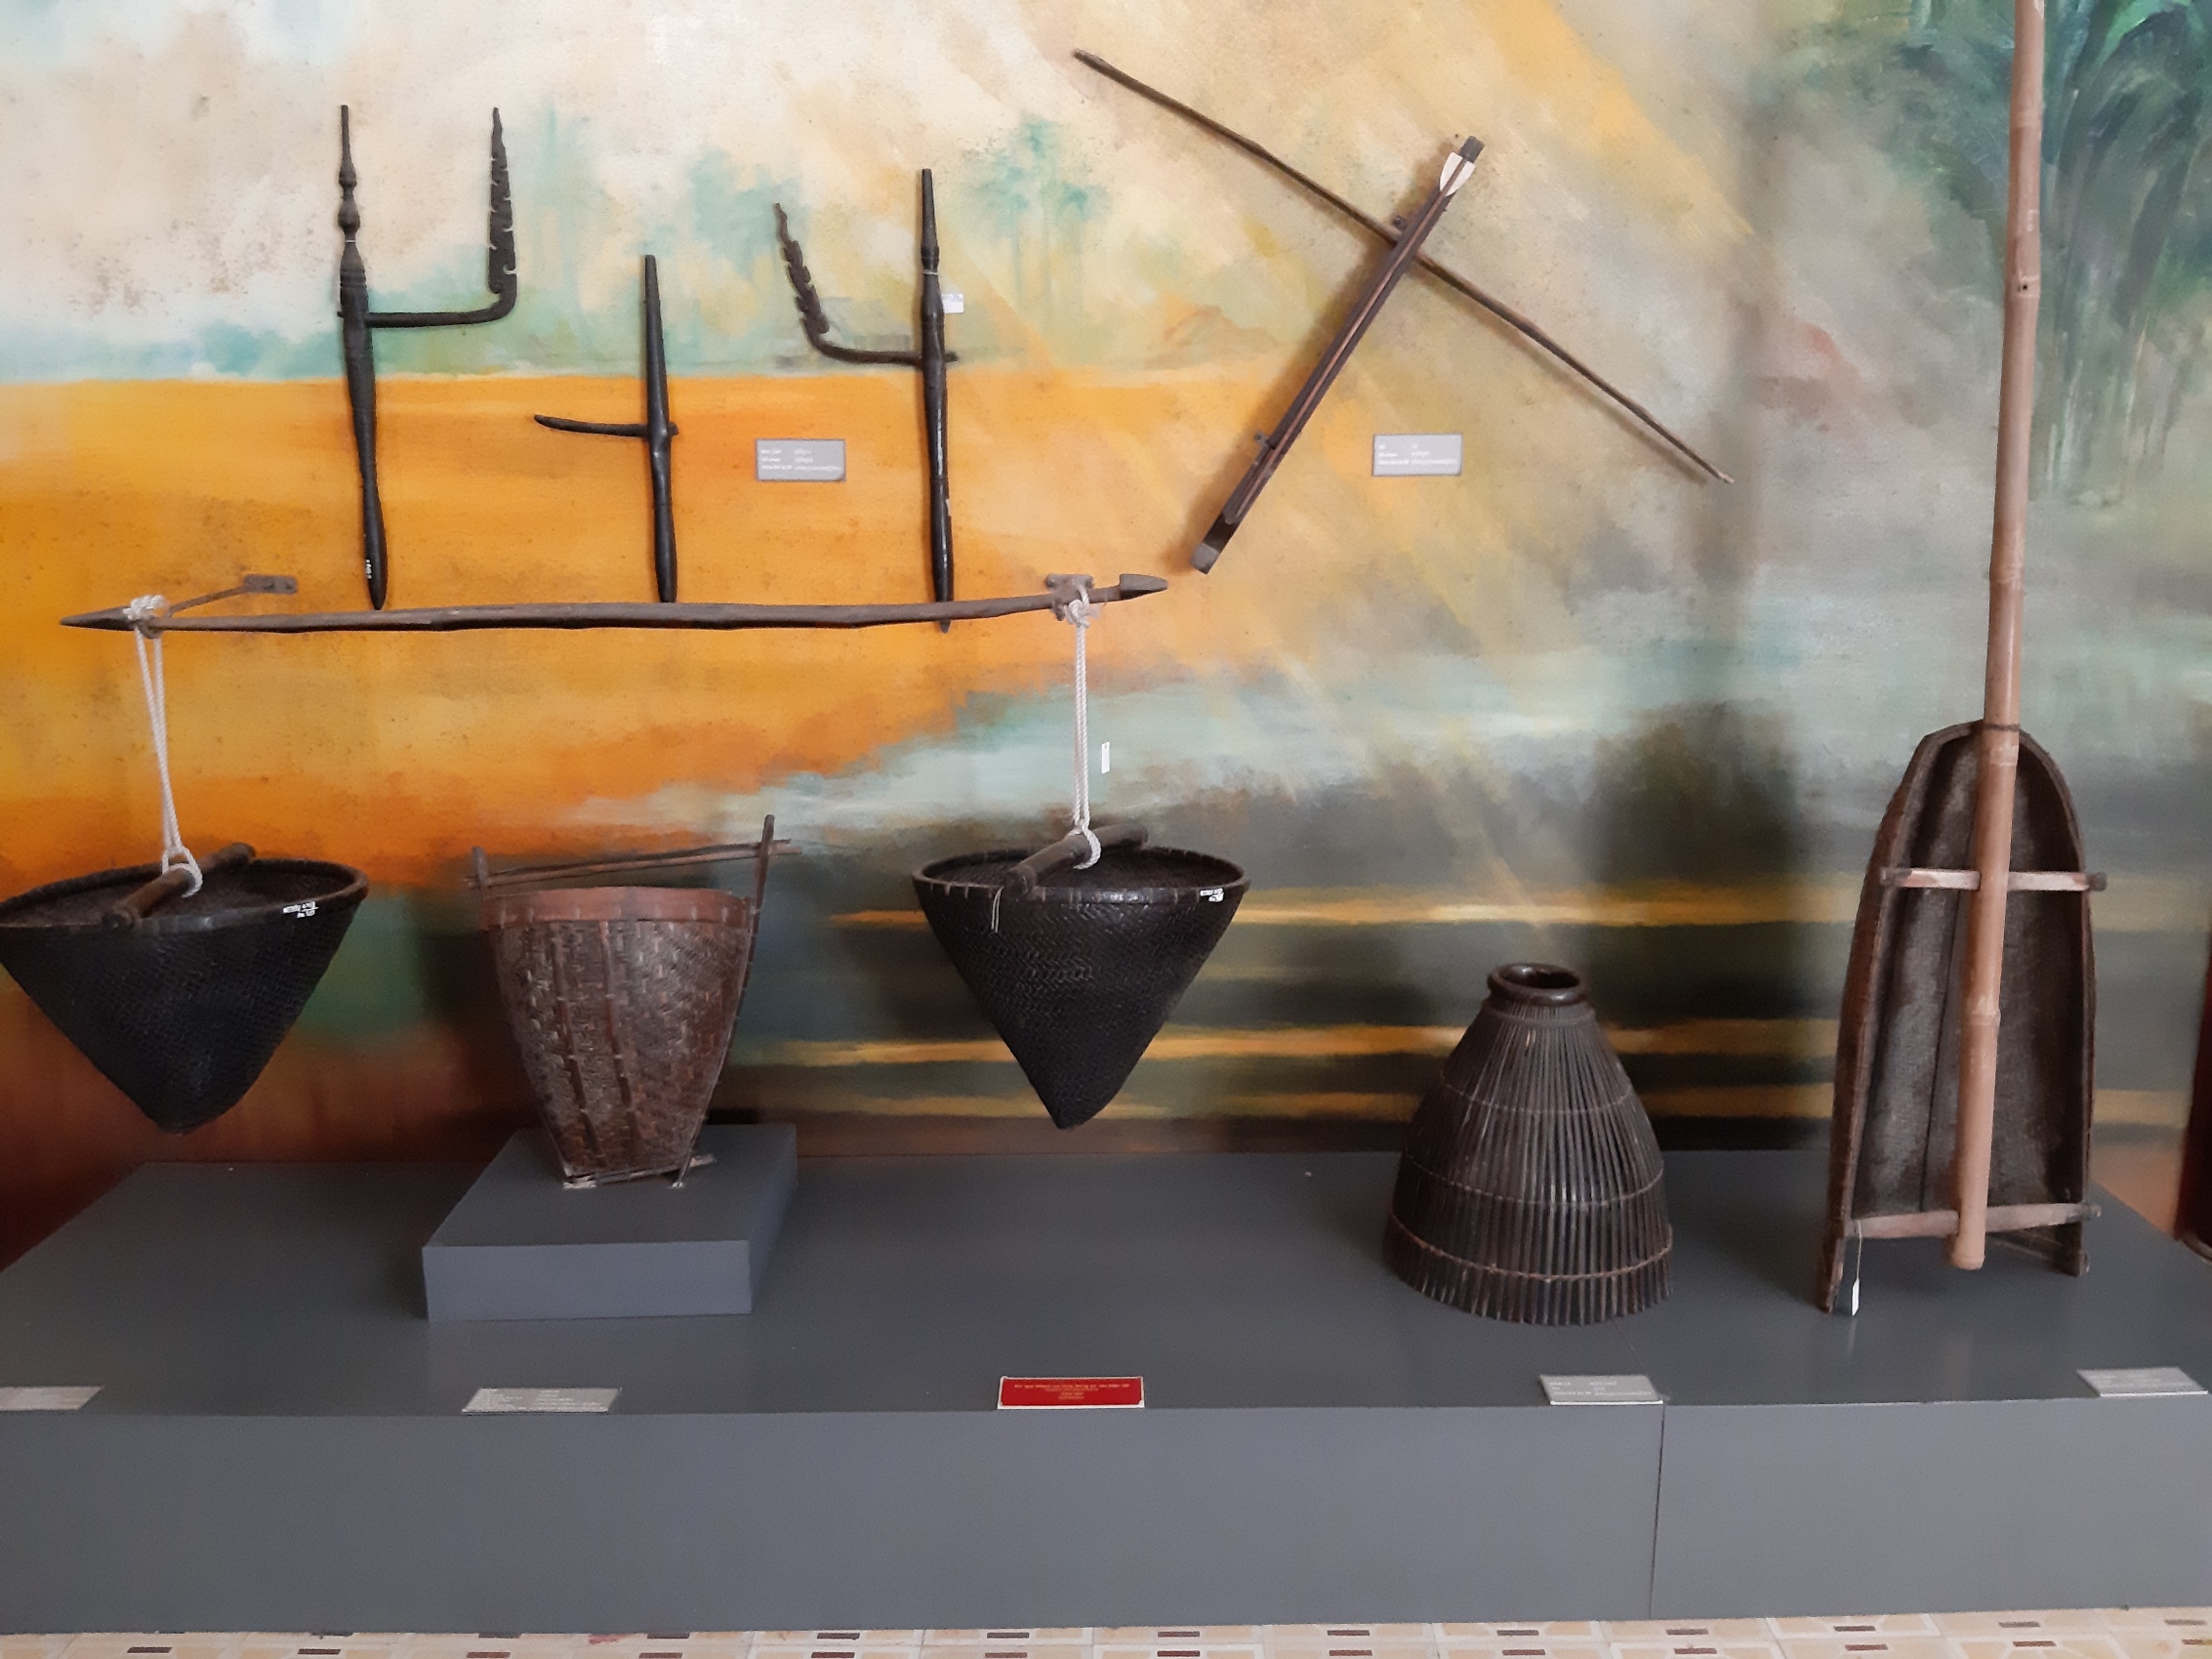 Các loại nông cụ lao động của người Khmer trong sản xuất nông nghiệp và đánh bắt thủy sản được trưng bày tại Bảo tàng